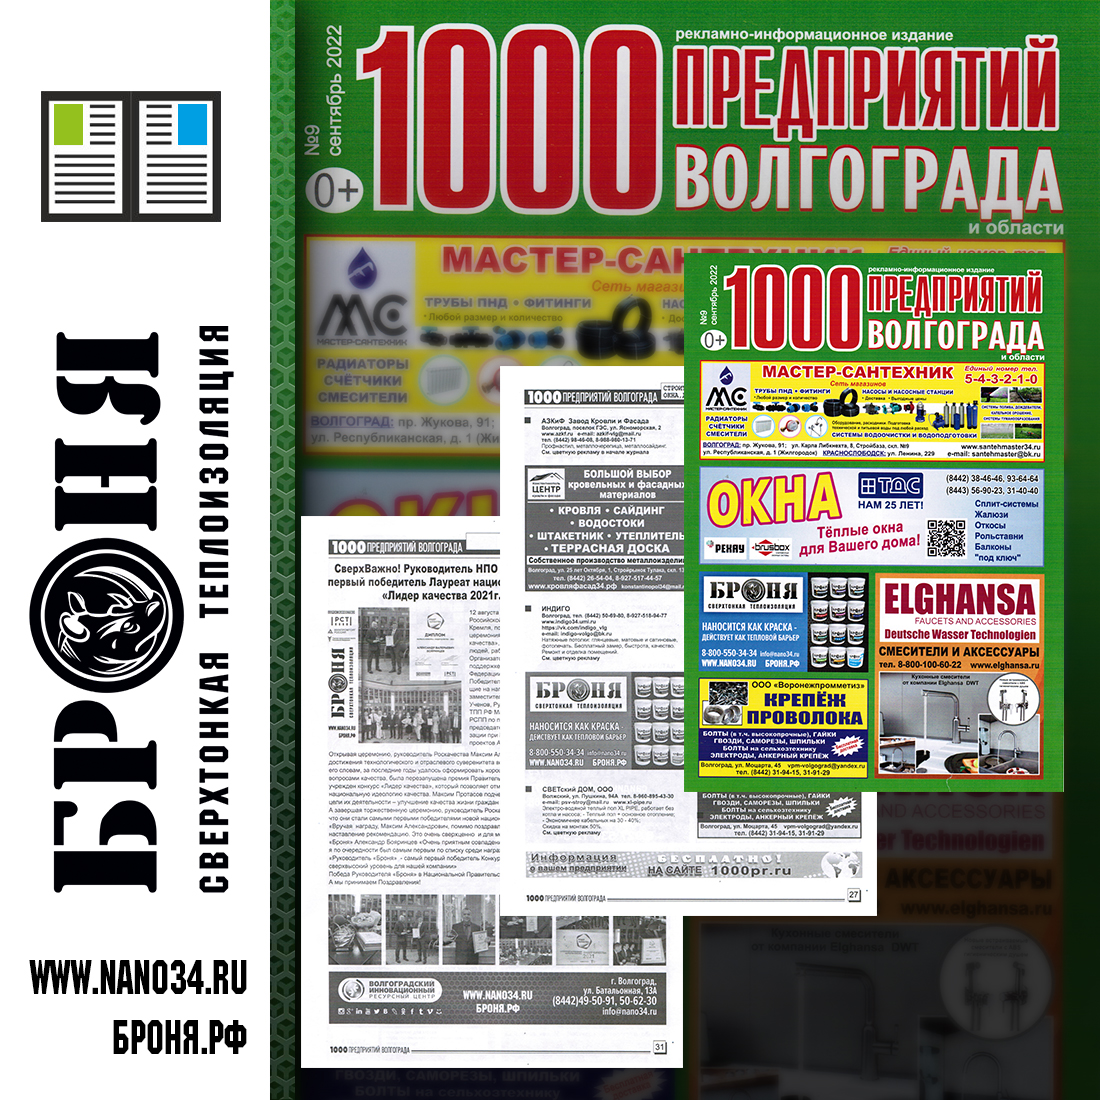 Размещение Теплоизоляции Броня в журнале 1000 предприятий Волгограда и области (Сентябрь 2022)